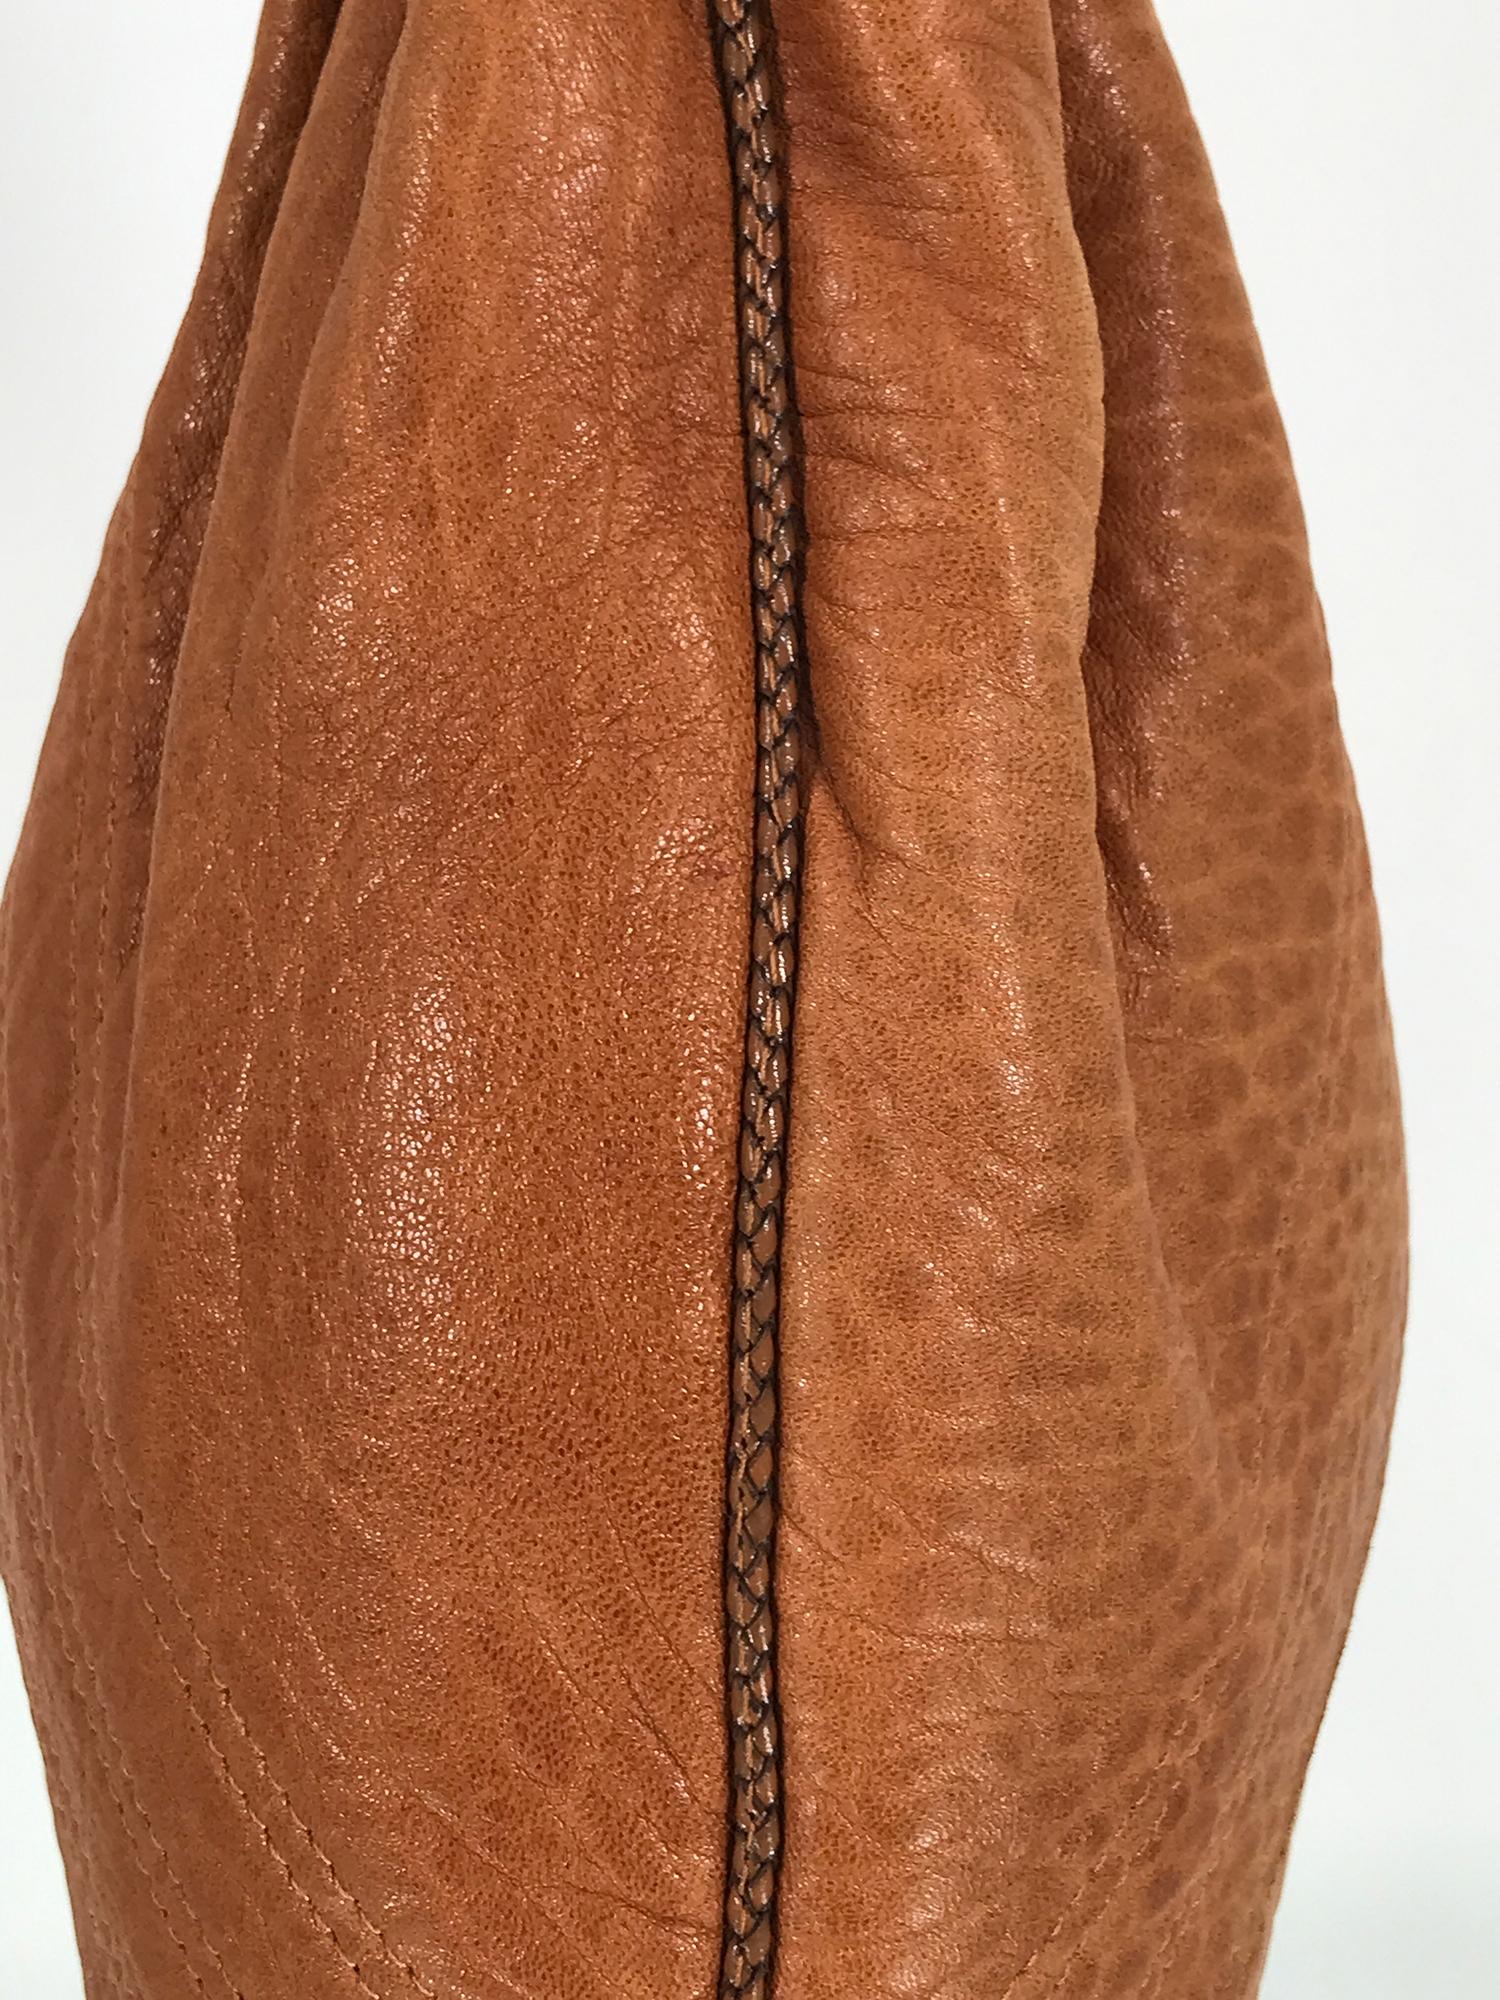 Fendi Spy Boho Shoulder Bag in Caramel Leather Zucca Lining For Sale 3